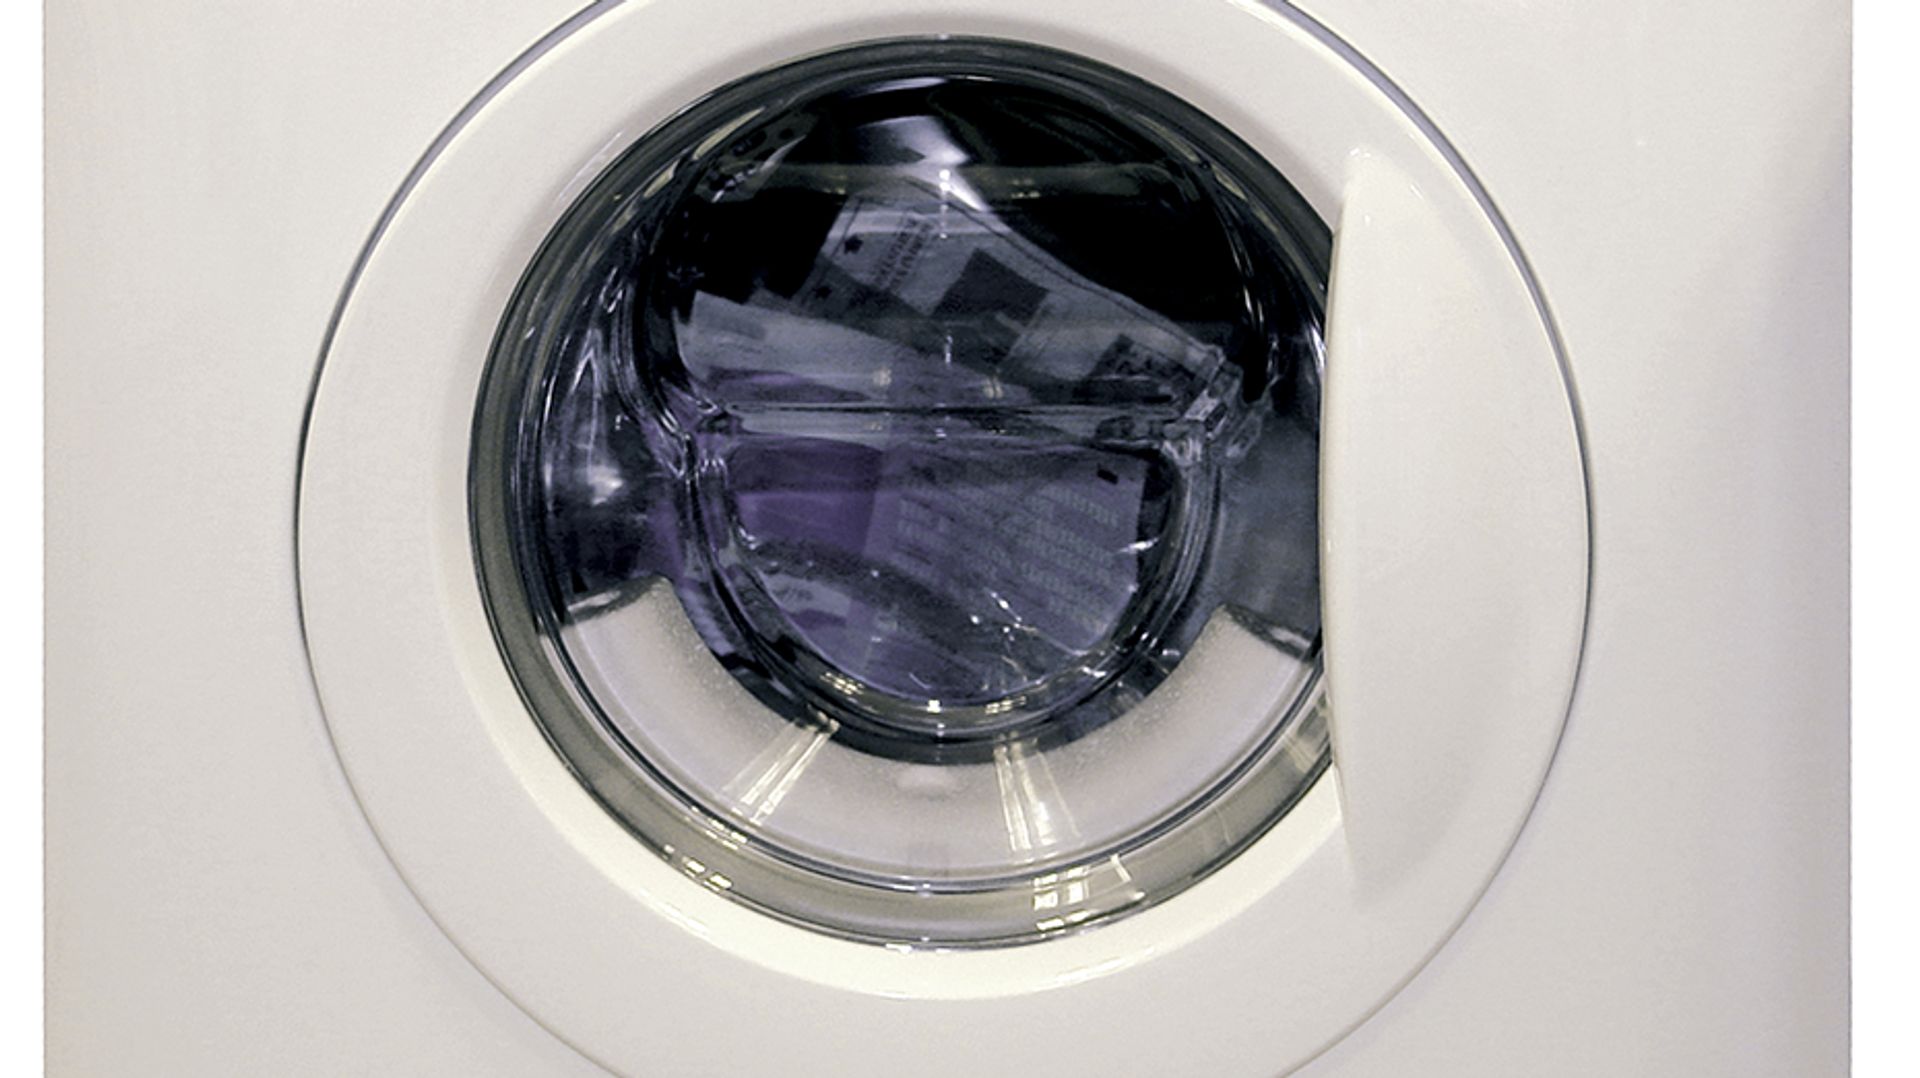 diefstal haai Deskundige Zuinige wasmachine vaak onzuinig gebruikt - Kassa - BNNVARA